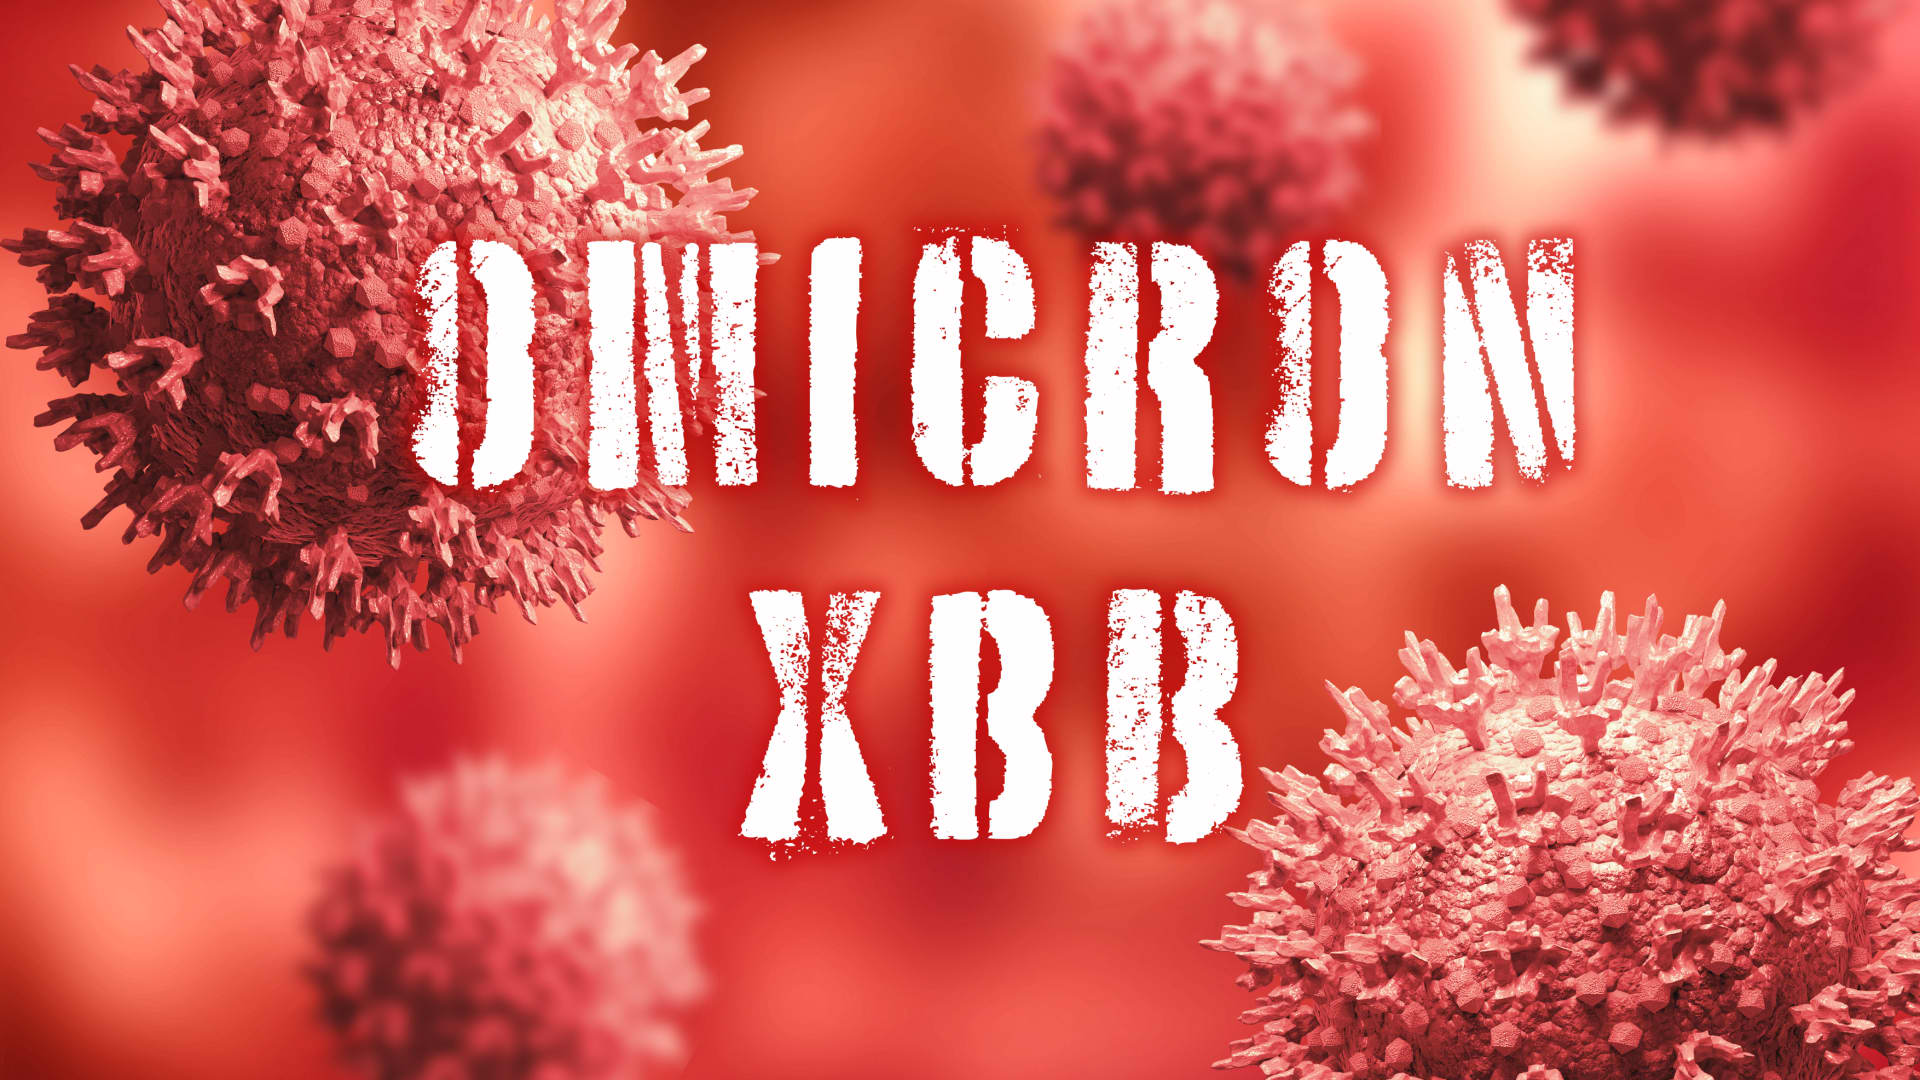 अत्यधिक प्रतिरक्षा इवेसिव ऑमिक्रॉन XBB.1.5 वैरिएंट अमेरिका में तेज़ी से प्रभावी हो रहा है क्योंकि यह साप्ताहिक रूप से दोगुना हो जाता है